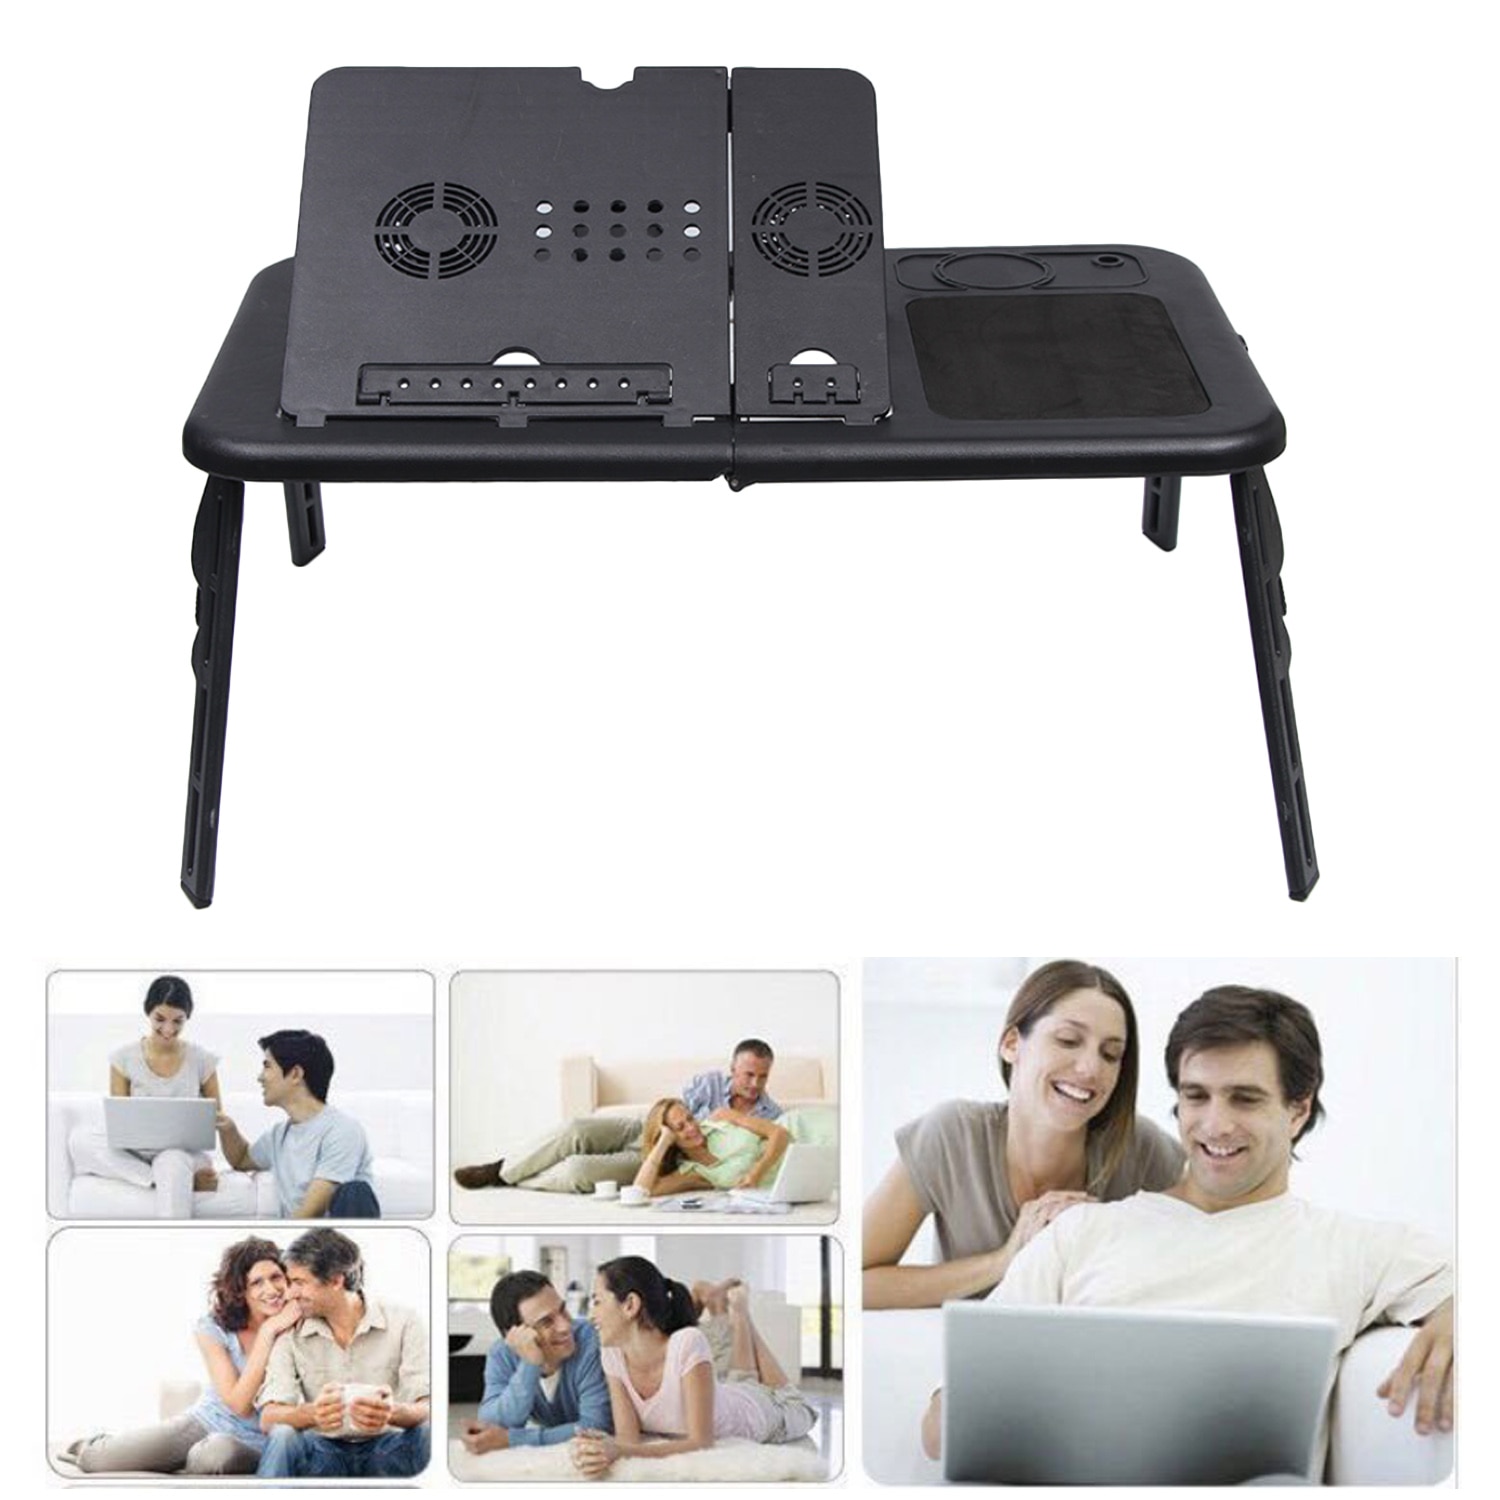 Besegad taşınabilir katlanabilir ayarlanabilir dizüstü yatak tepsisi USB dizüstü PC masa masa standı 2 soğutma fanı ile fare bardak tutucu siyah